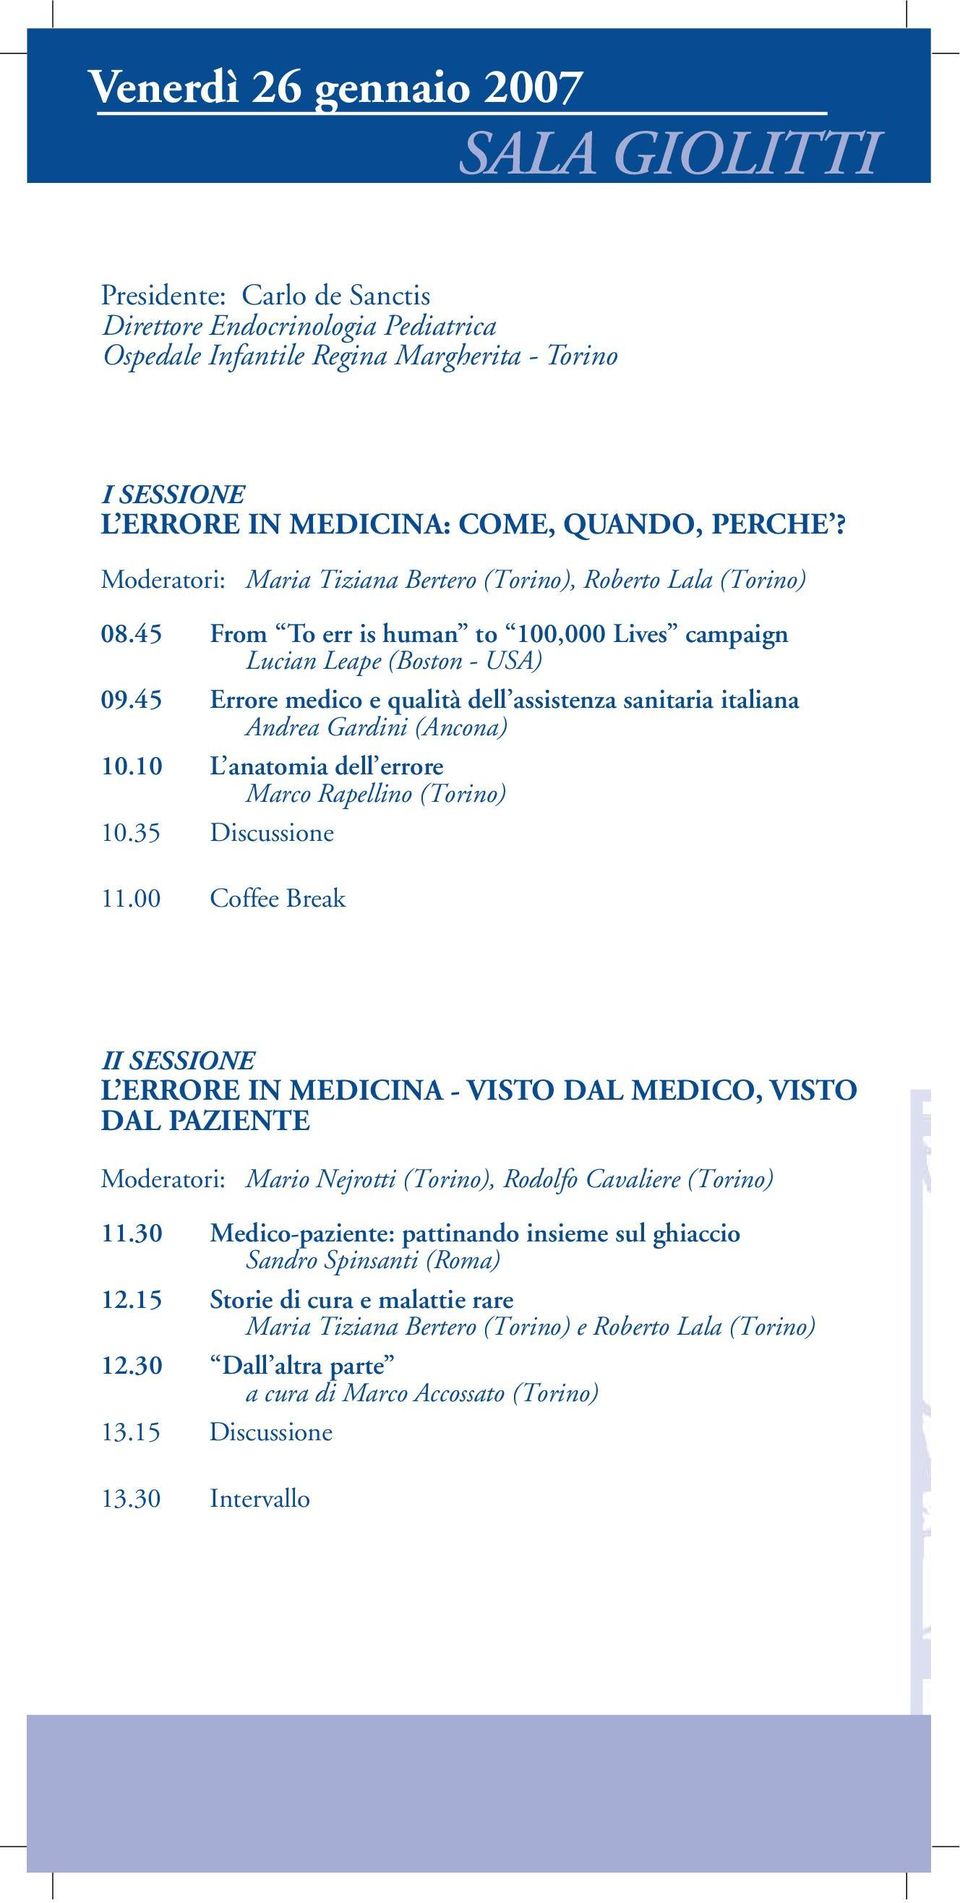 45 Errore medico e qualità dell assistenza sanitaria italiana Andrea Gardini (Ancona) 10.10 L anatomia dell errore Marco Rapellino (Torino) 10.35 Discussione 11.